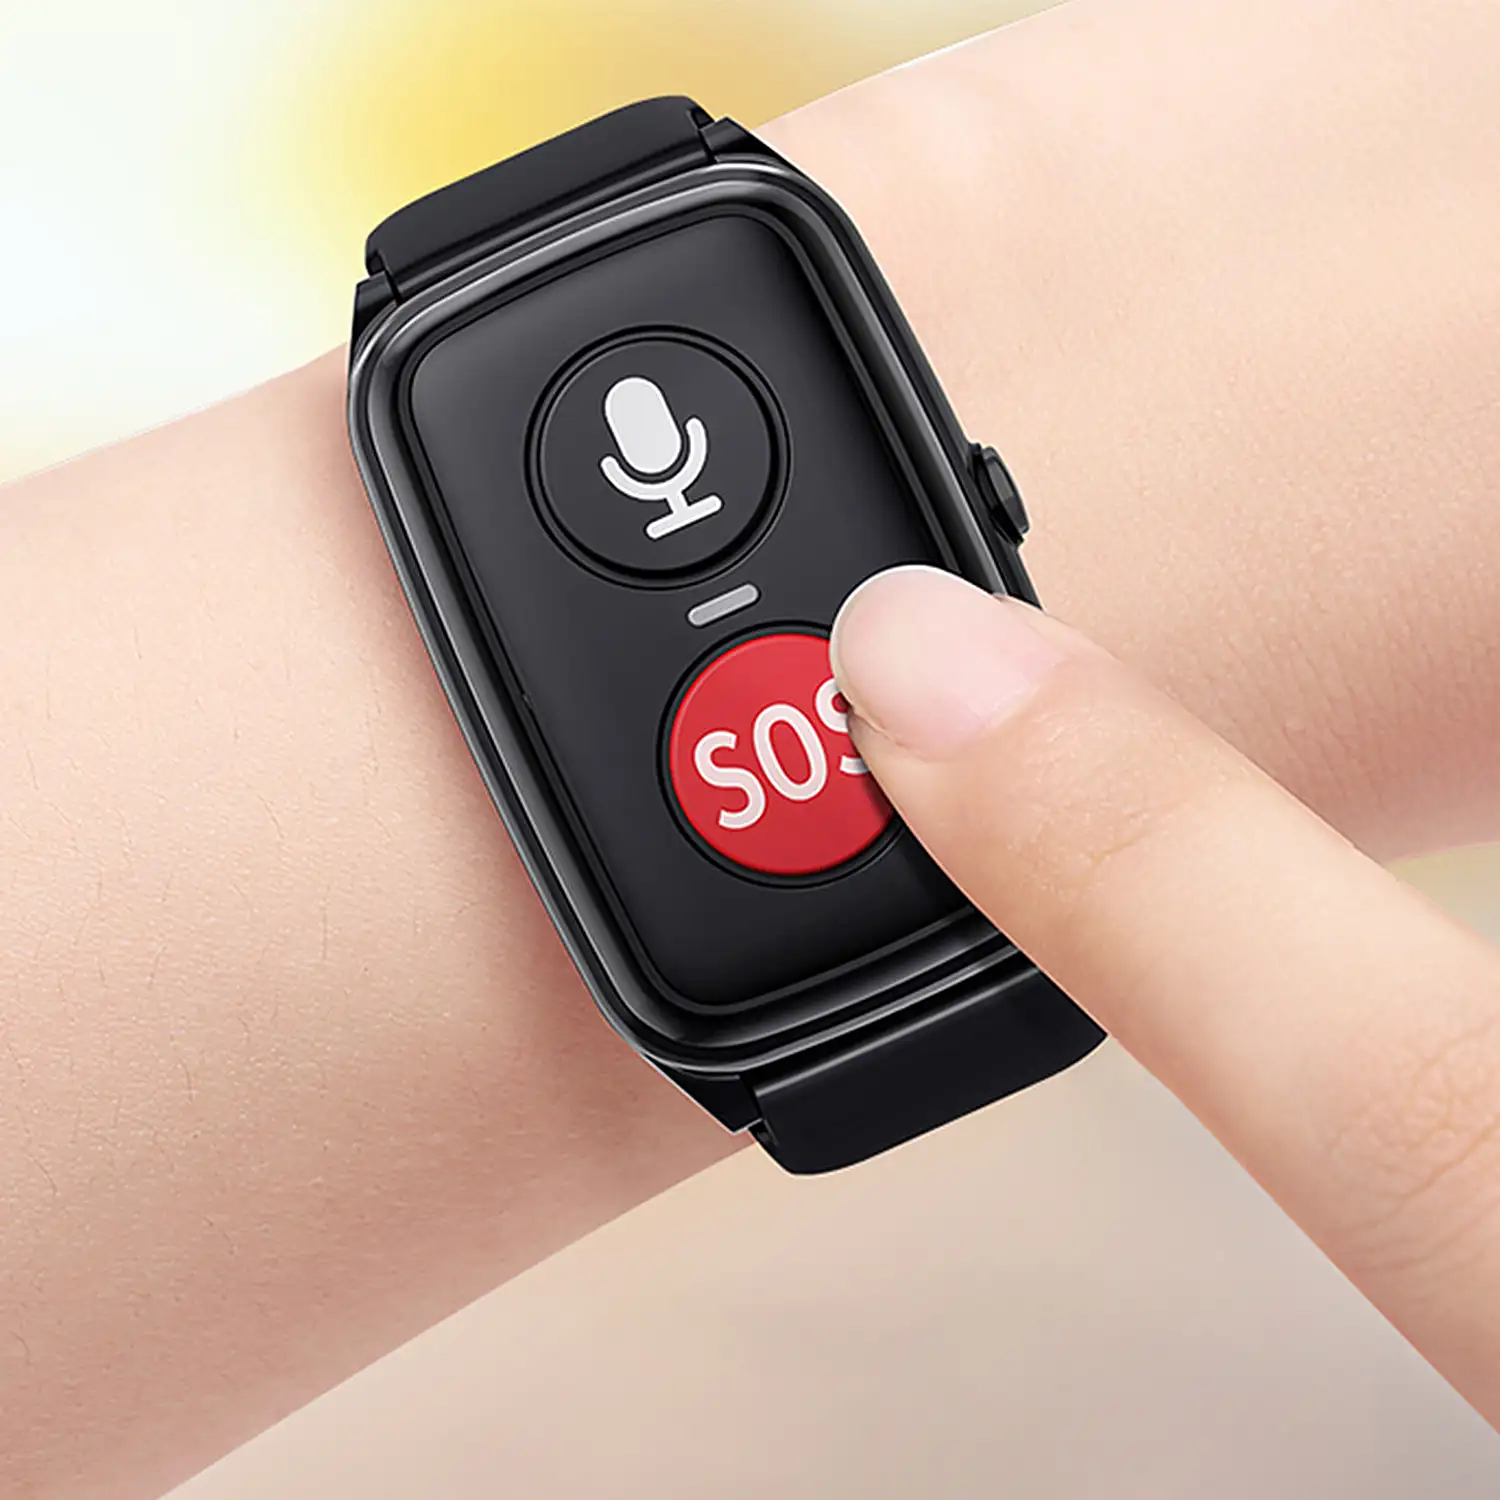 Smartwatch 4G D10-PRO localizador GPS, Wifi y LBS. Especial personas mayores. Con termómetro y podómero.